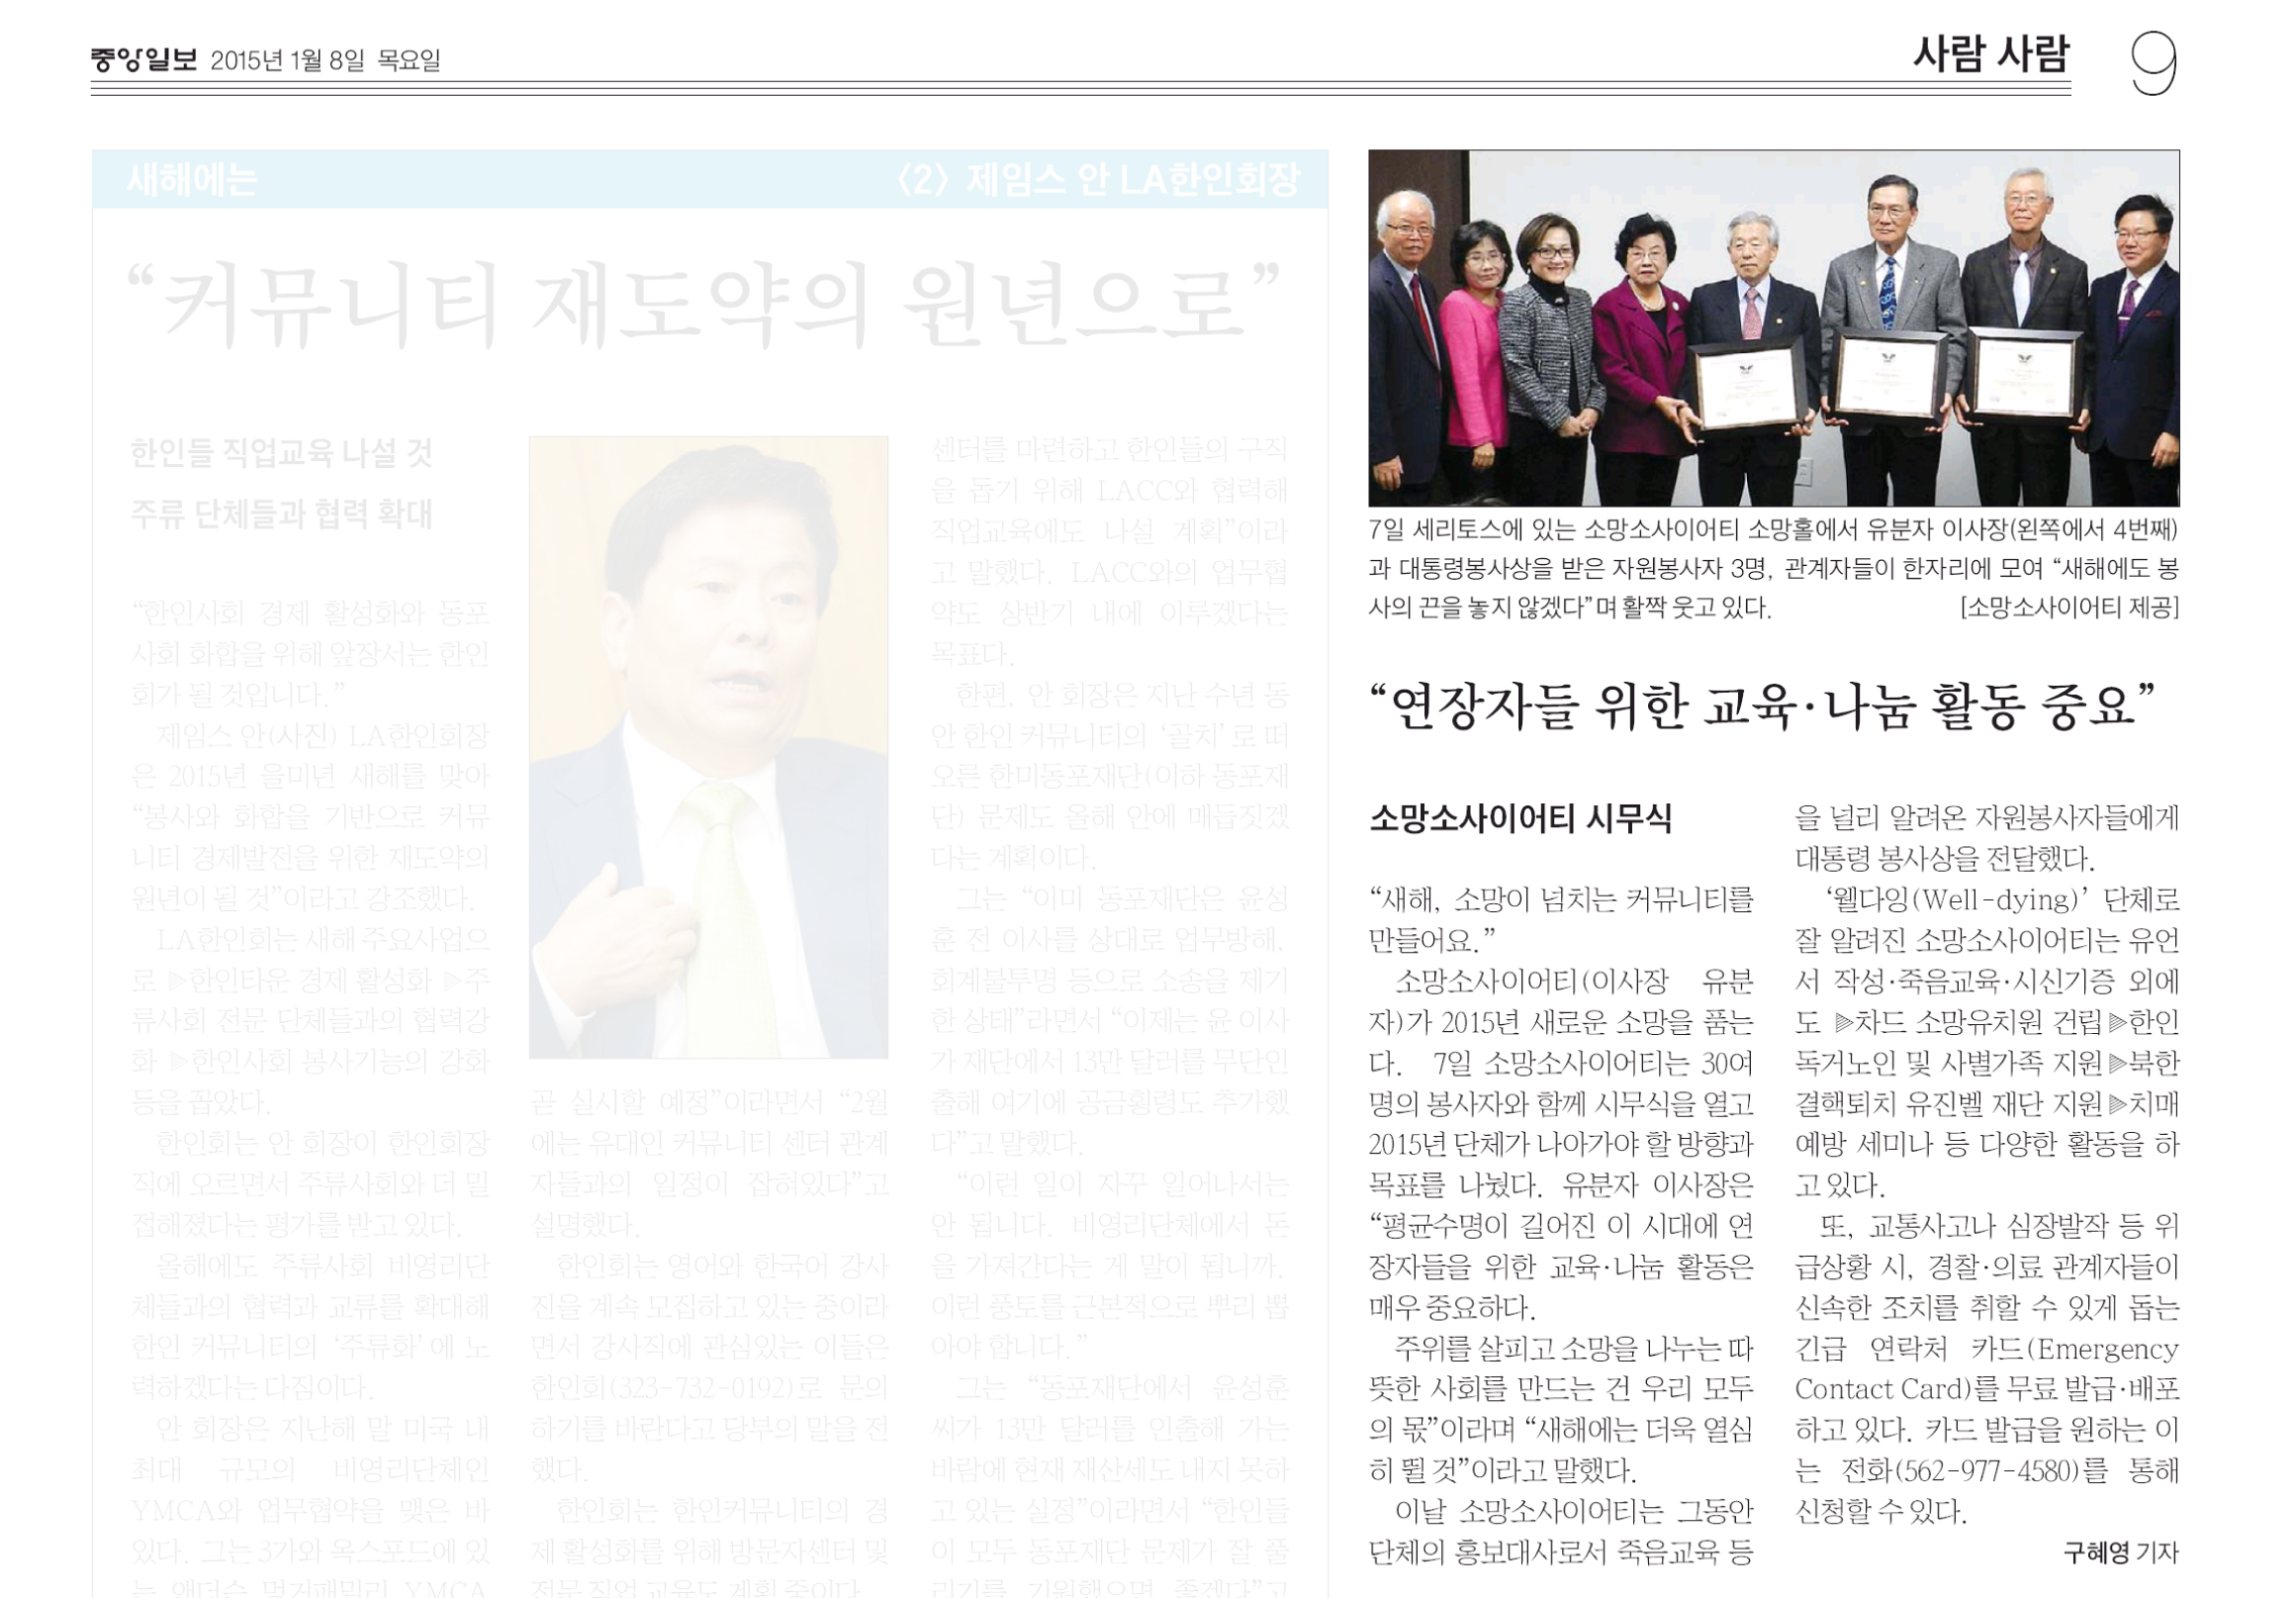 “연장자들 위한 교육 나눔 활동 중요” 2015년 1월 8일  중앙일보